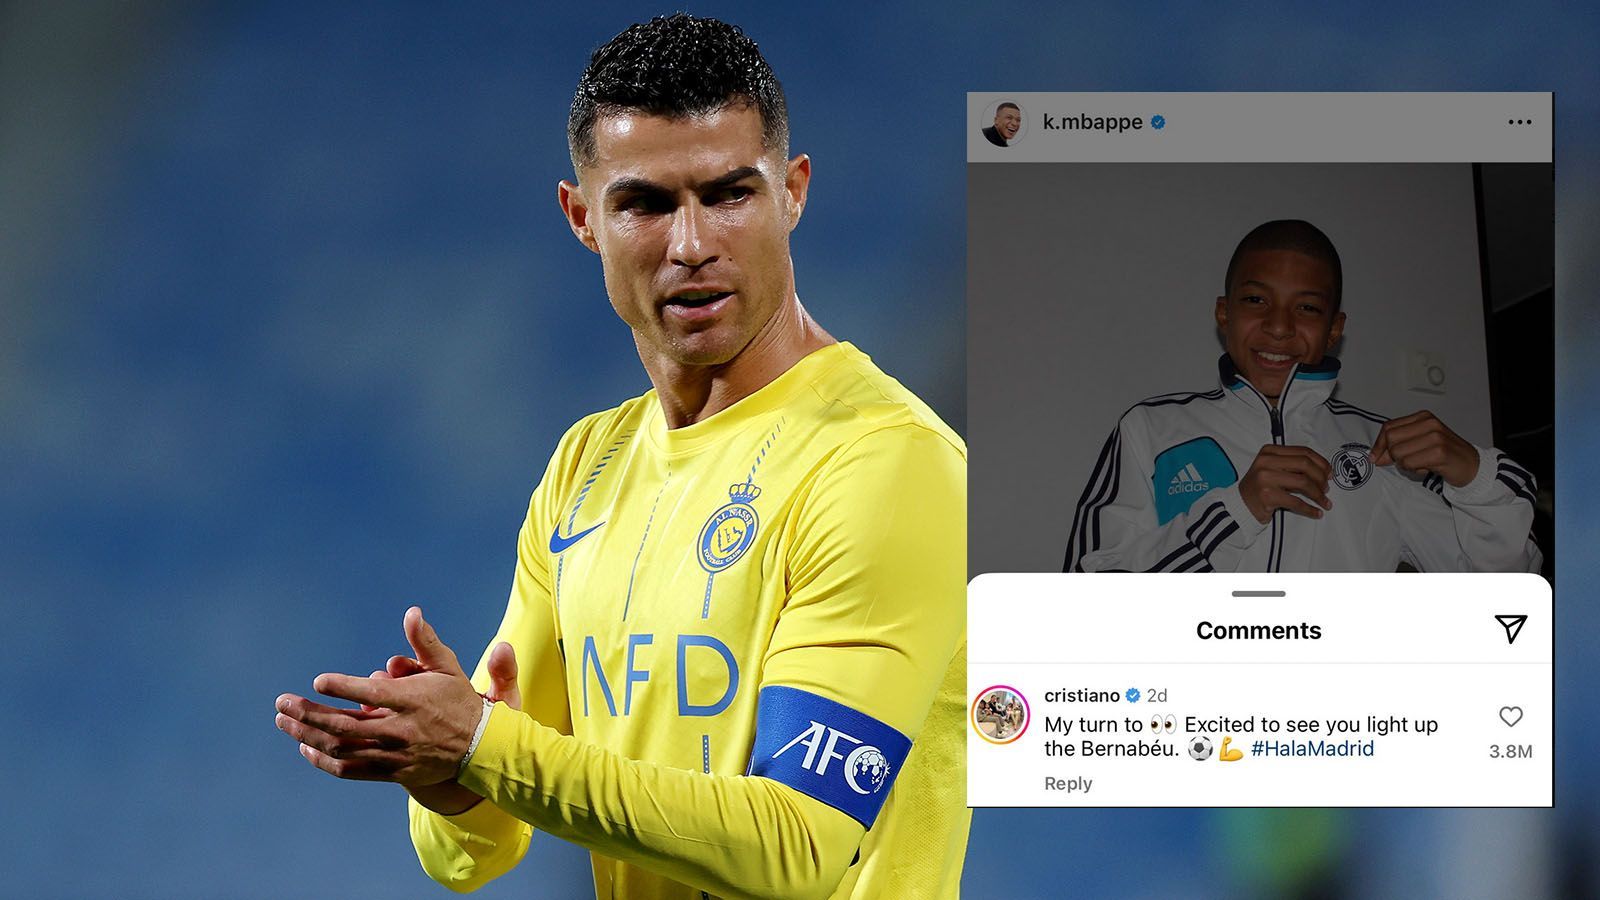 <strong>Ronaldos Kommentar bricht "Like-Rekord" auf Instagram</strong><br>Nachdem der Transfer Mbappes zu Real in trockenen Tüchern ist, kocht das Netz über. Auch Cristiano Ronaldo scheint erfreut, den Franzosen bei seinem Ex-Klub zu sehen. Unter Mbappes Post schrieb er: "Nun schau ich dir zu! Ich bin gespannt, wie du das Bernabeu zum Leuchten bringst." Der Kommentar ist mit fast 4,8 Millionen Likes (6. Juni, weiter steigend) der am häufigsten gelikte Insta-Kommentar.